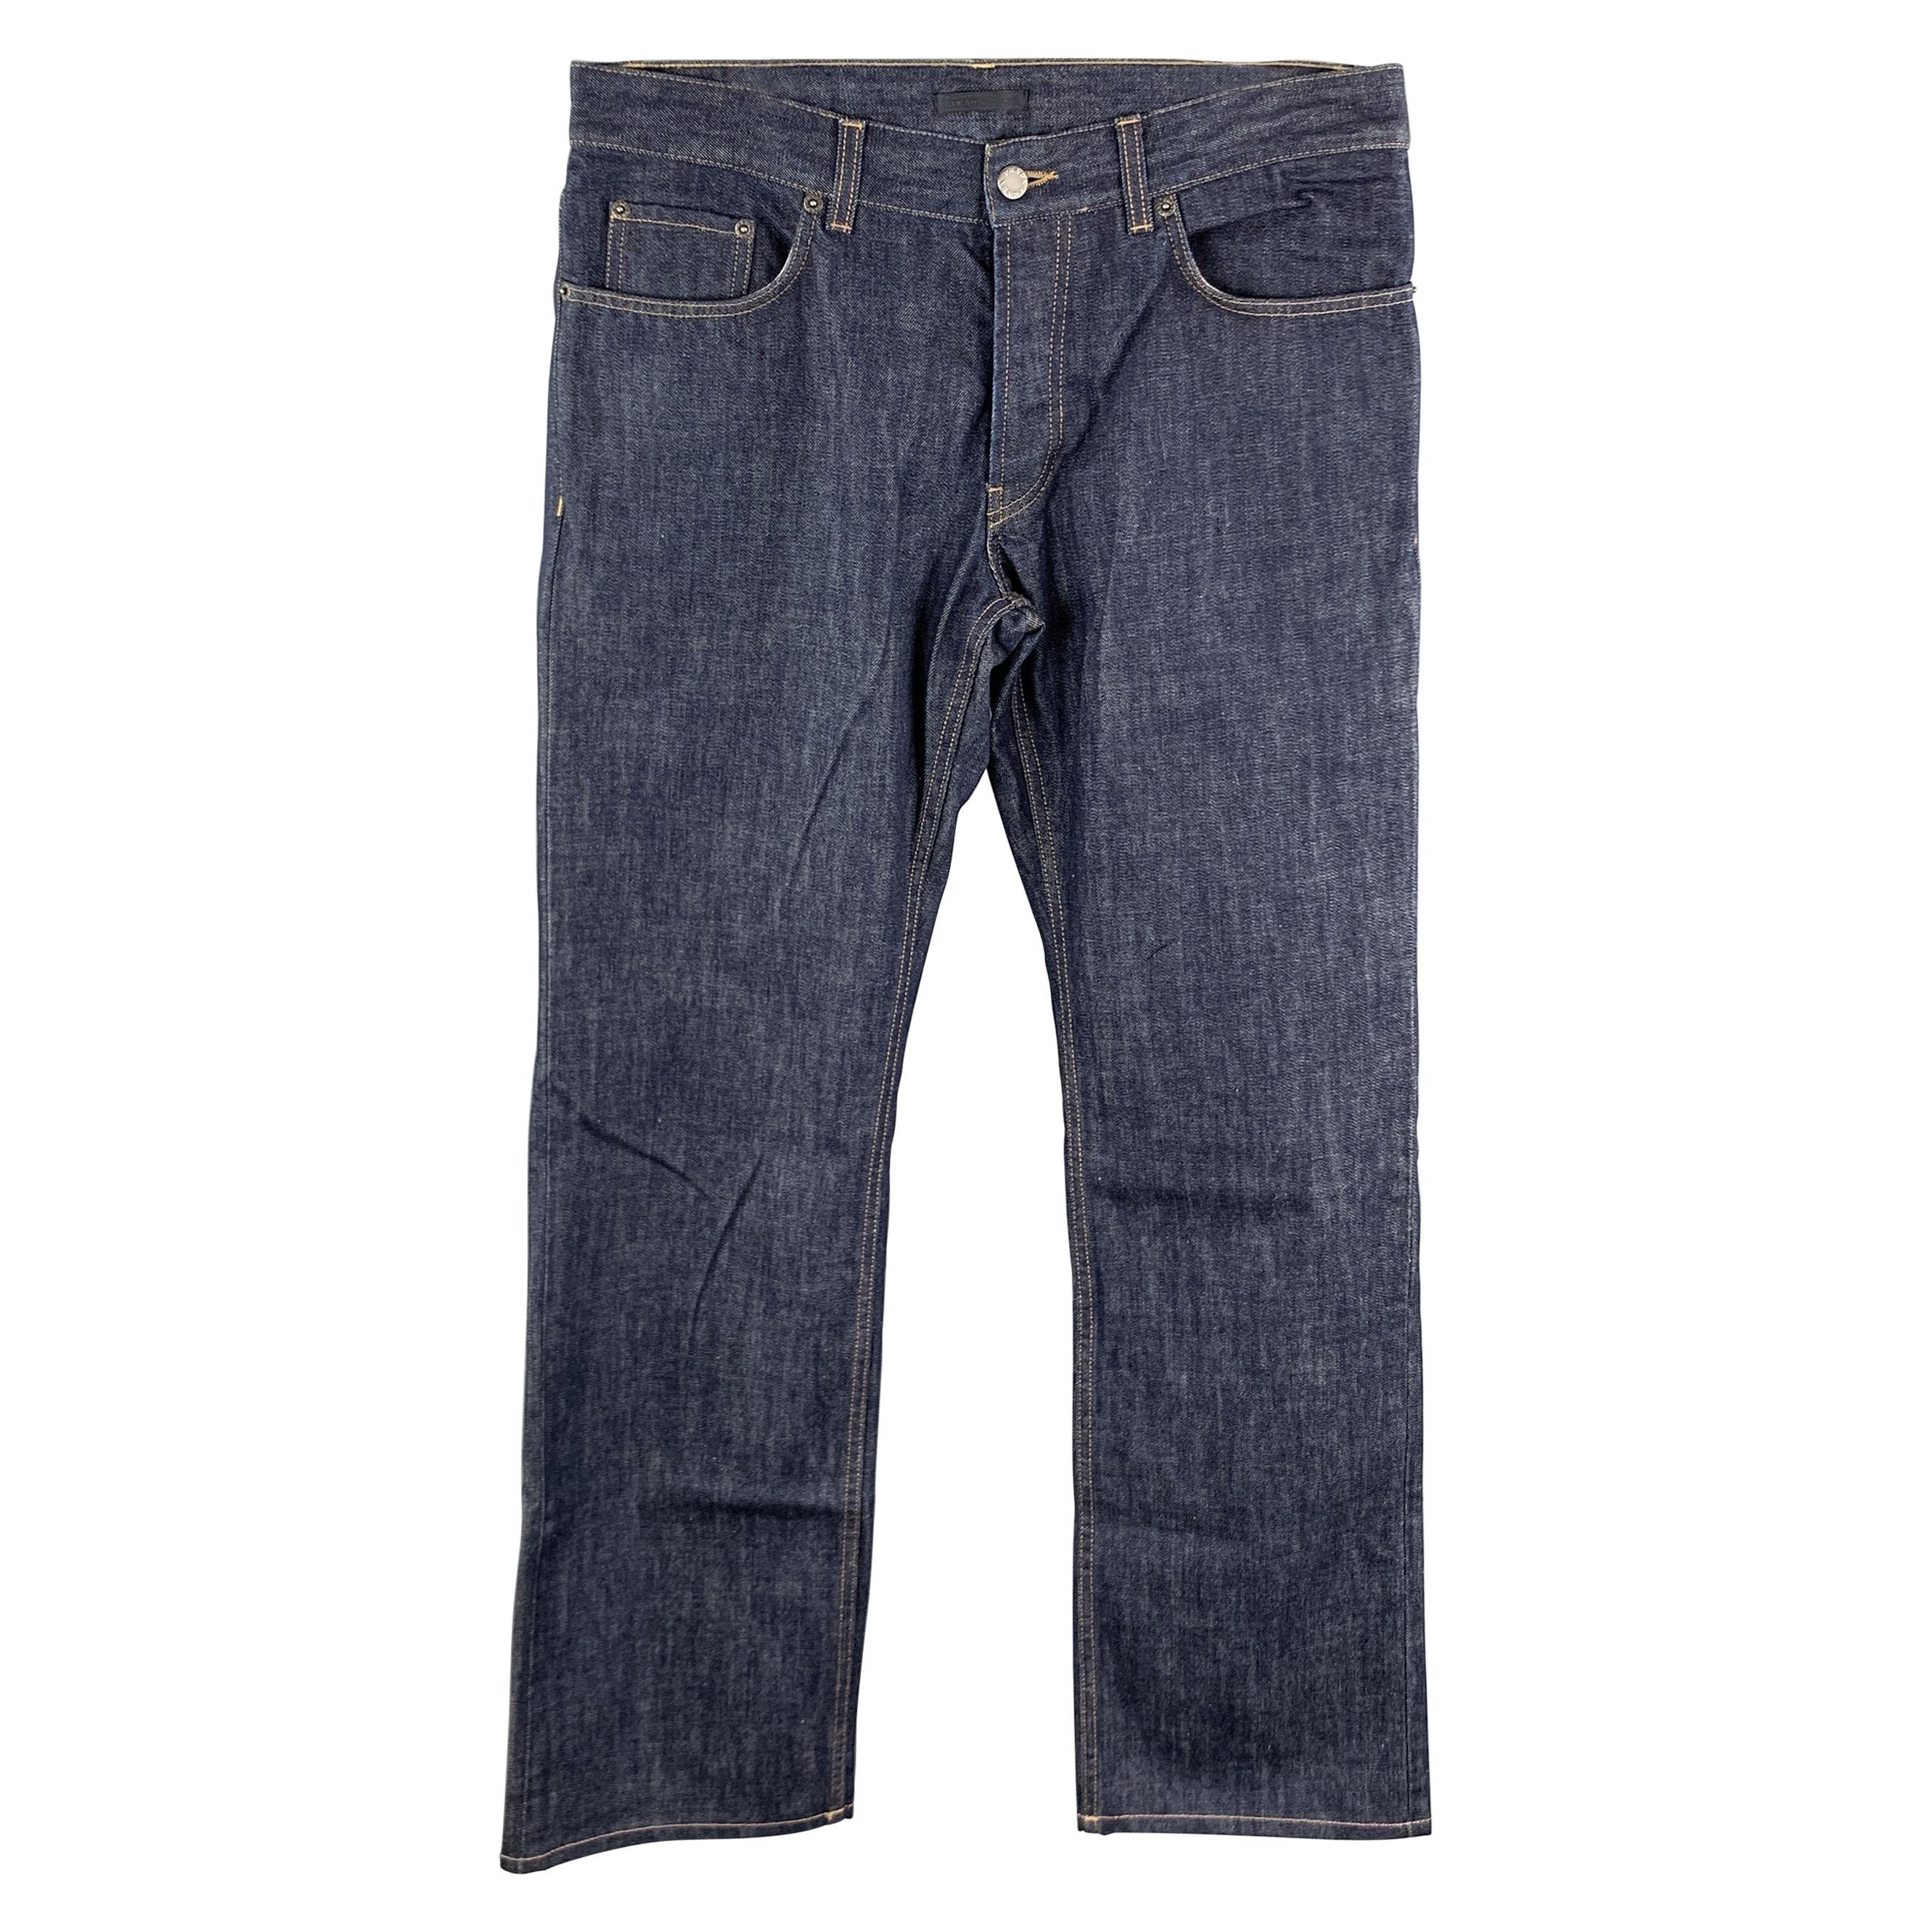 PRADA Size 33 Indigo Contrast Stitch Denim Button Fly Jeans